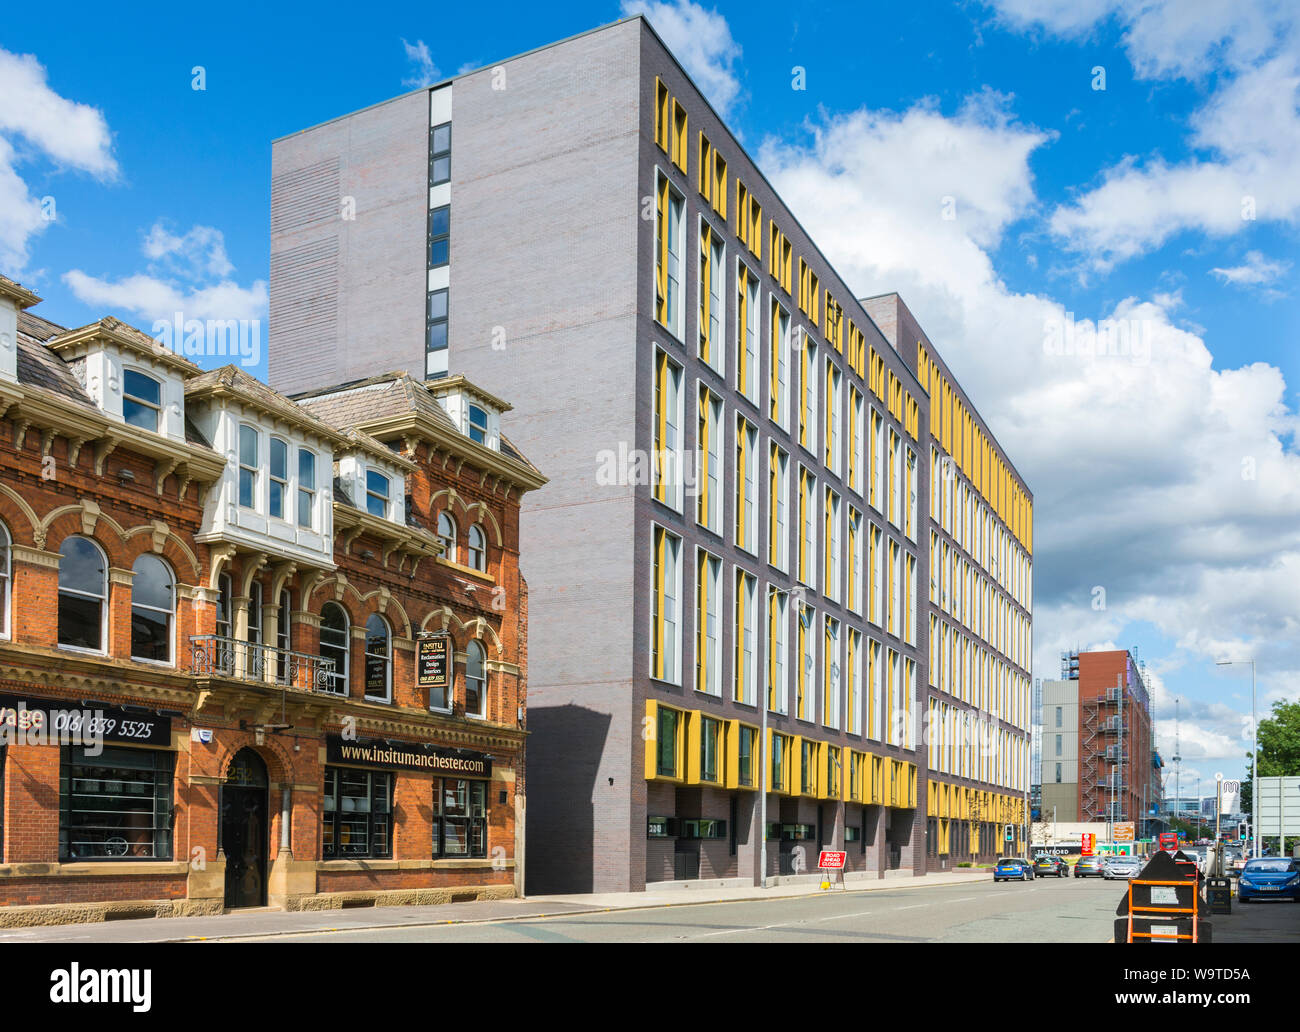 Le complexe d'appartements Trilogy, Chester Road, Manchester, Angleterre, Royaume-Uni. L'atelier de récupération architecturale Insitu, ancien hôtel et pub, se trouve sur la gauche. Banque D'Images